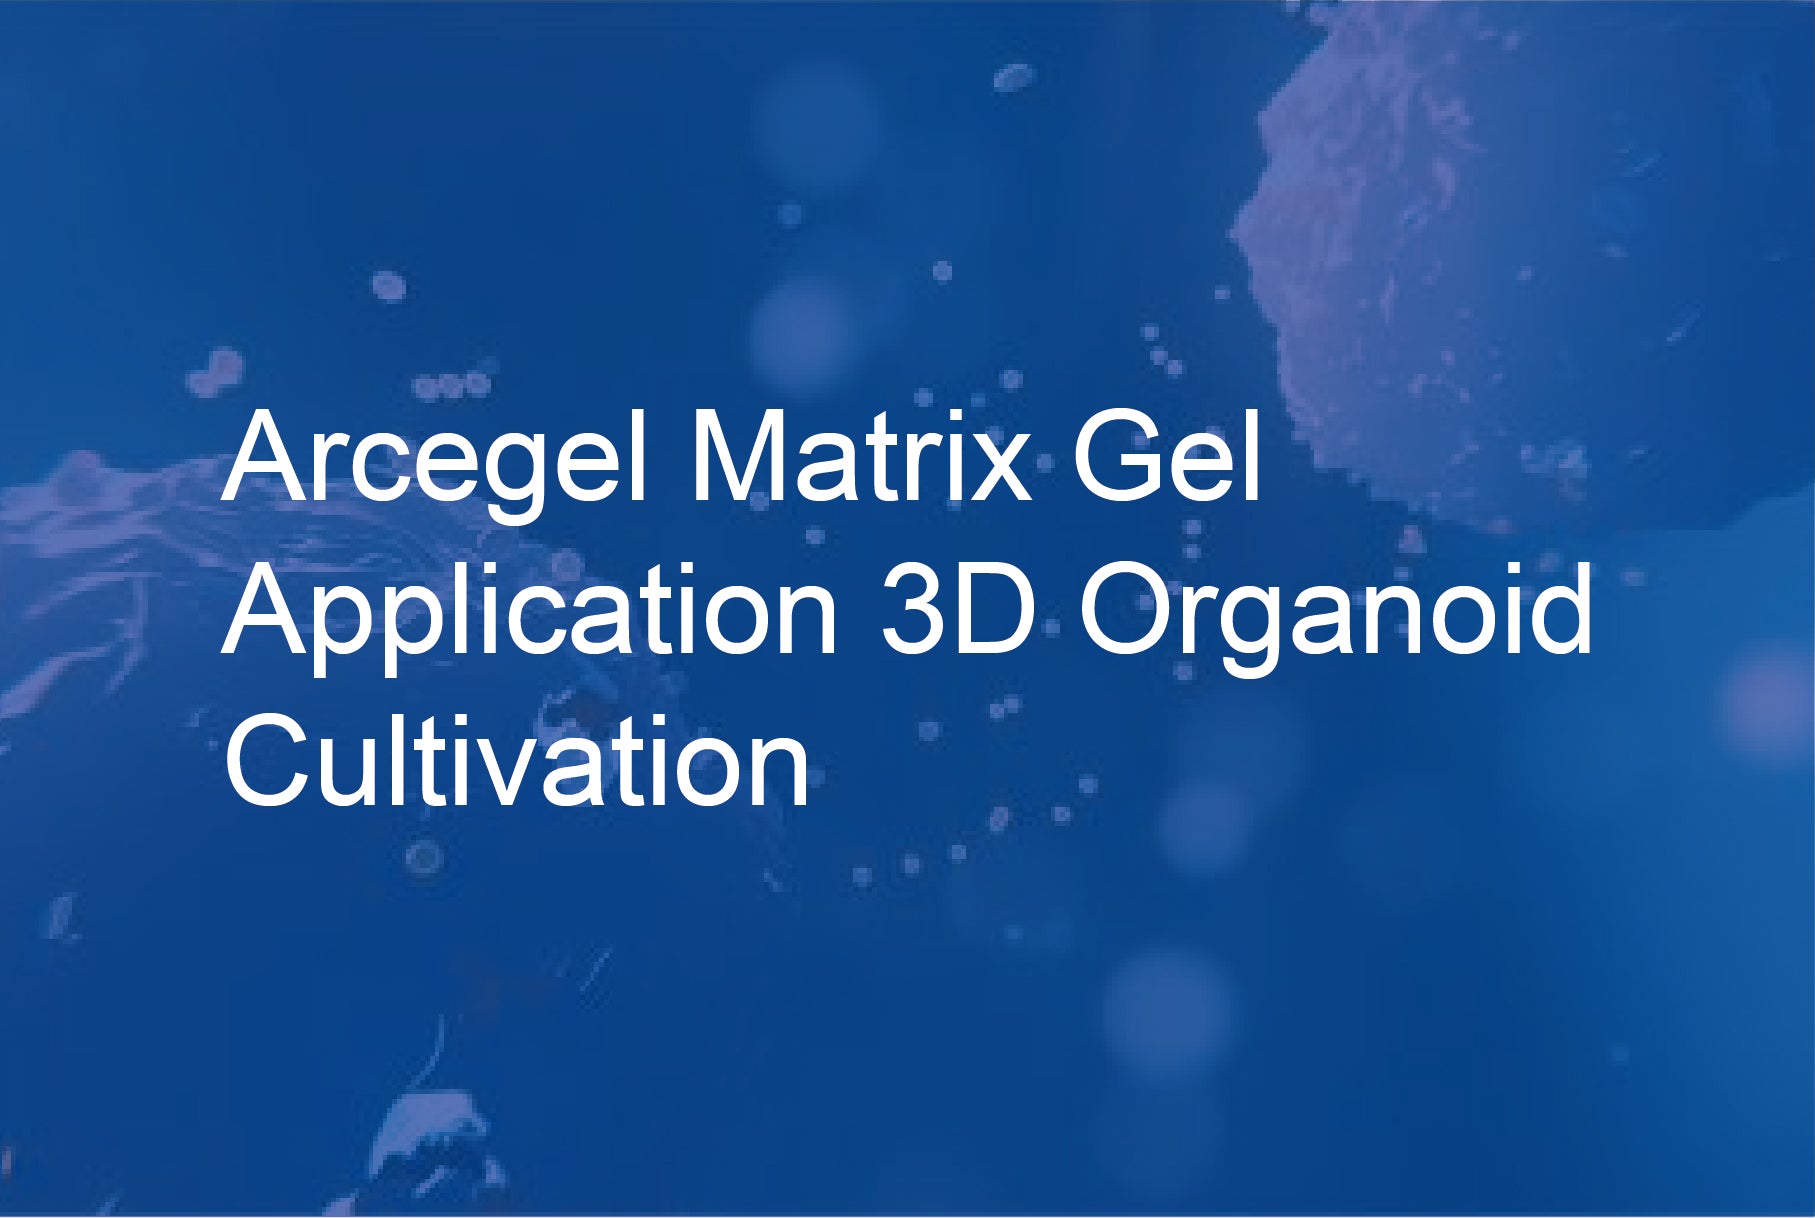 Arcegel Matrix Gel Application - 3D Organoid Cultivation